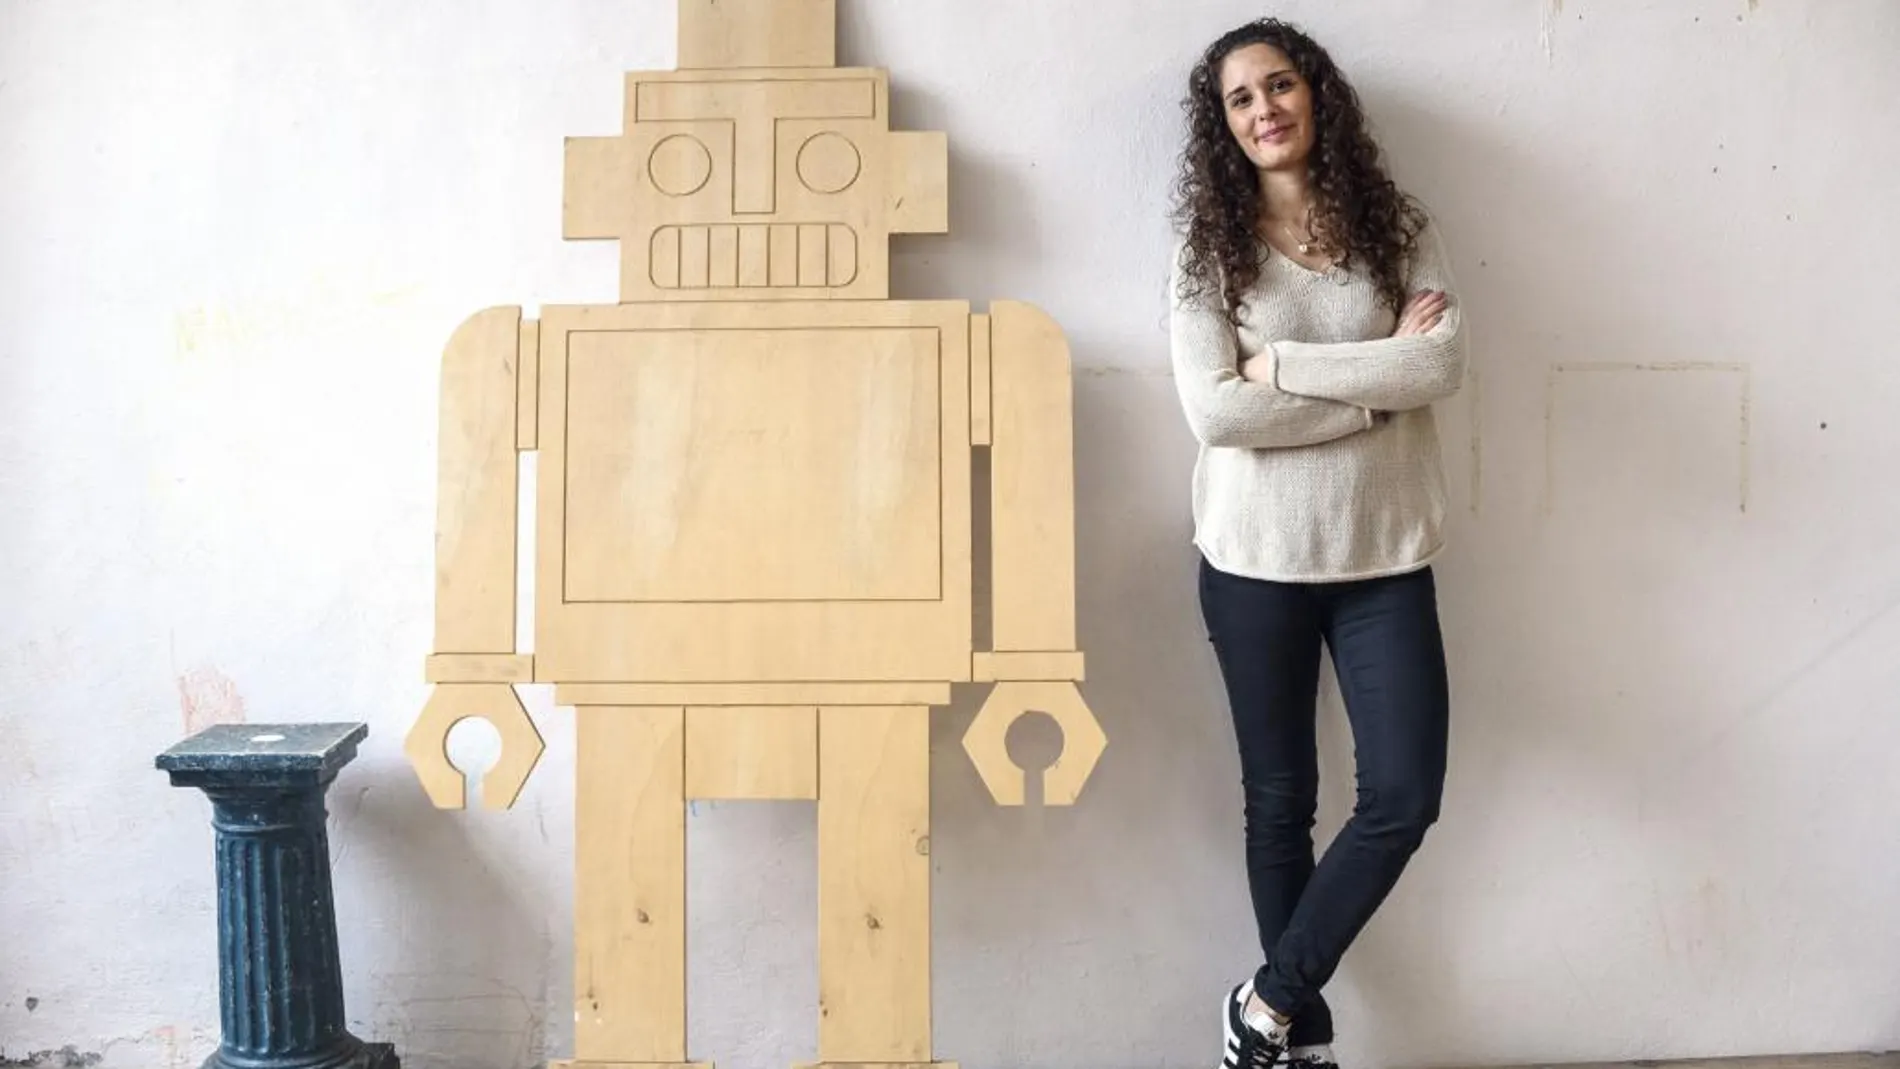 La ingeniera electrónica Nerea de la Riva, de 25 años y natural de Alcalá de Henares (Madrid), tetracampeona del mundo de robots futbolistas, posa junto a la figura de un robot